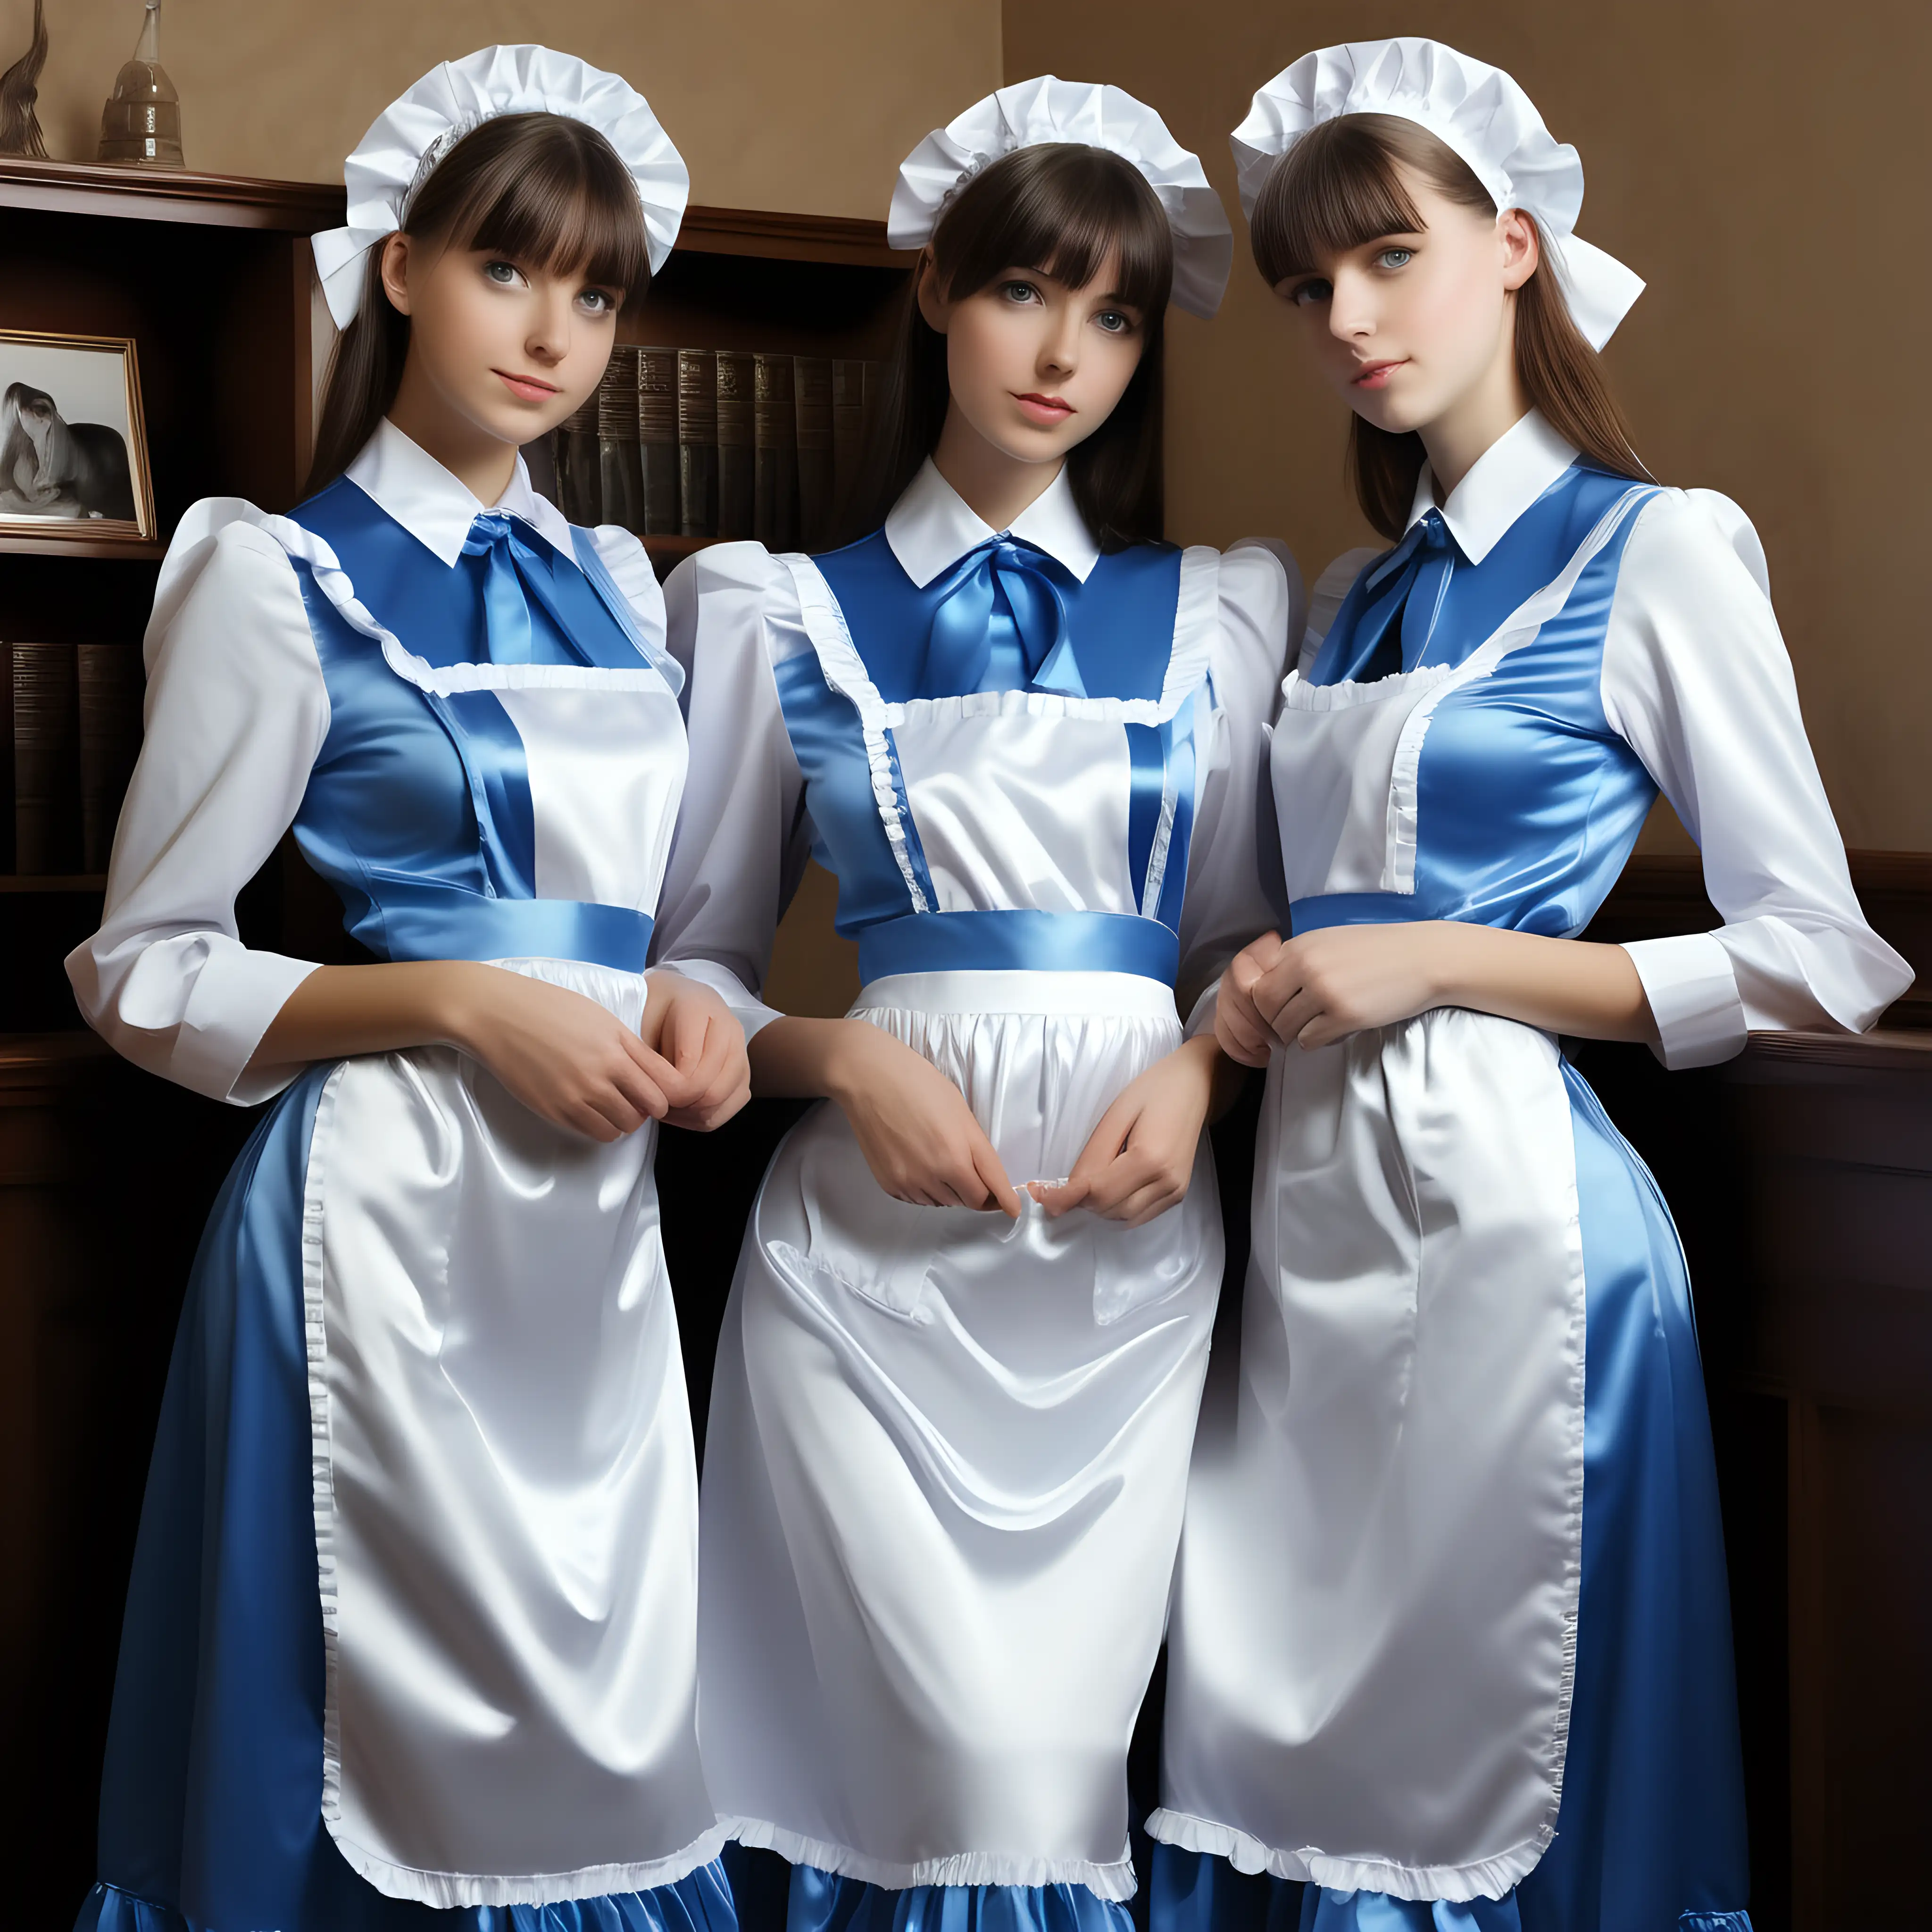 Elegant Girls in Satin Long Maid Uniforms Engage in Enchanting Tasks